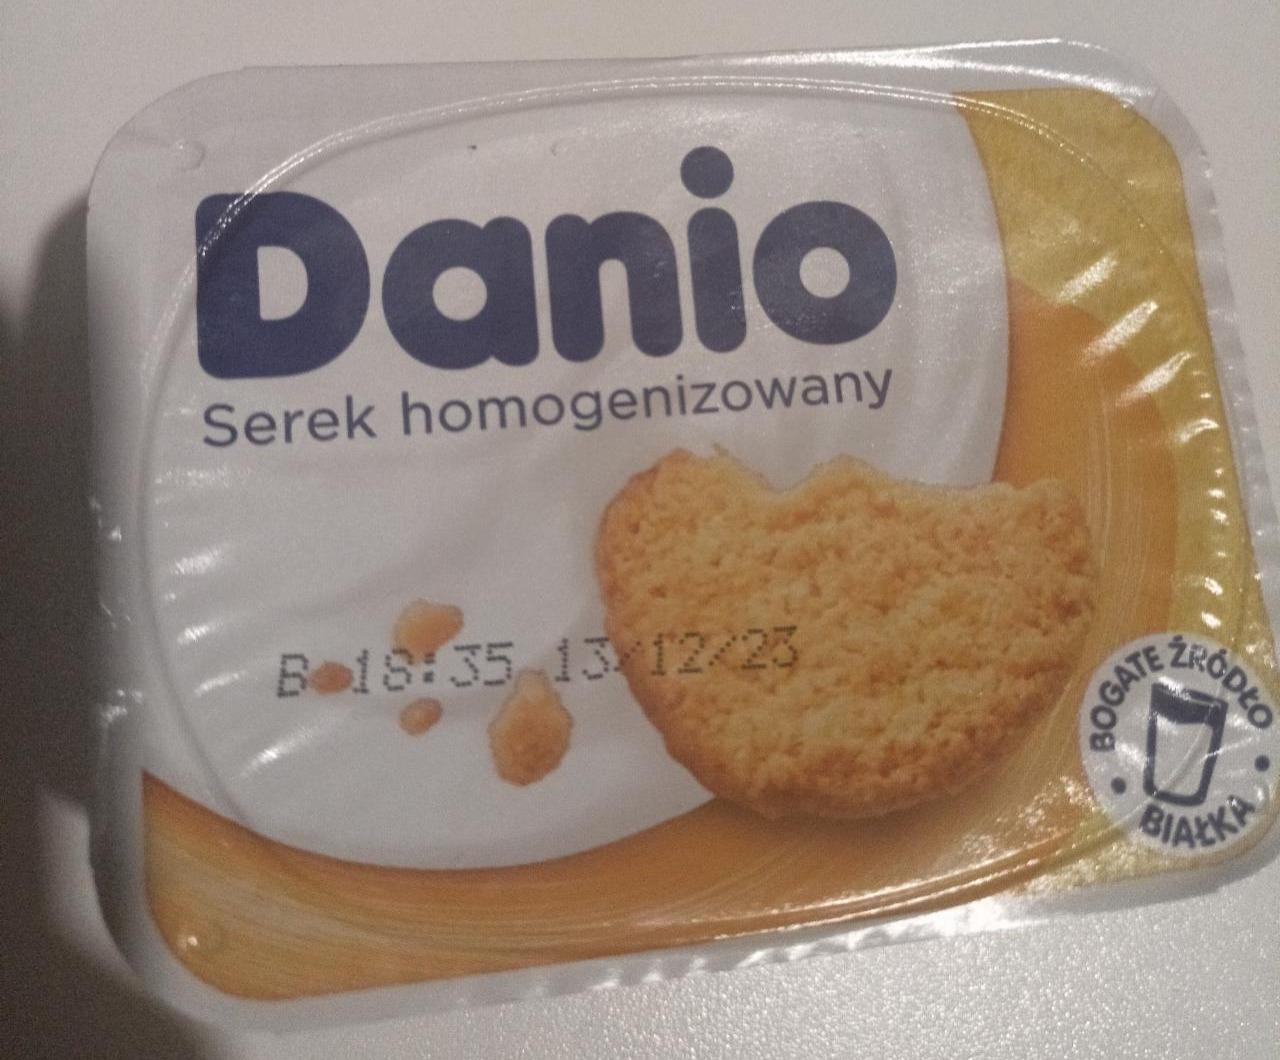 Zdjęcia - Danio Serek homogenizowany o smaku ciasteczkowym 520 g (4 x 130 g)